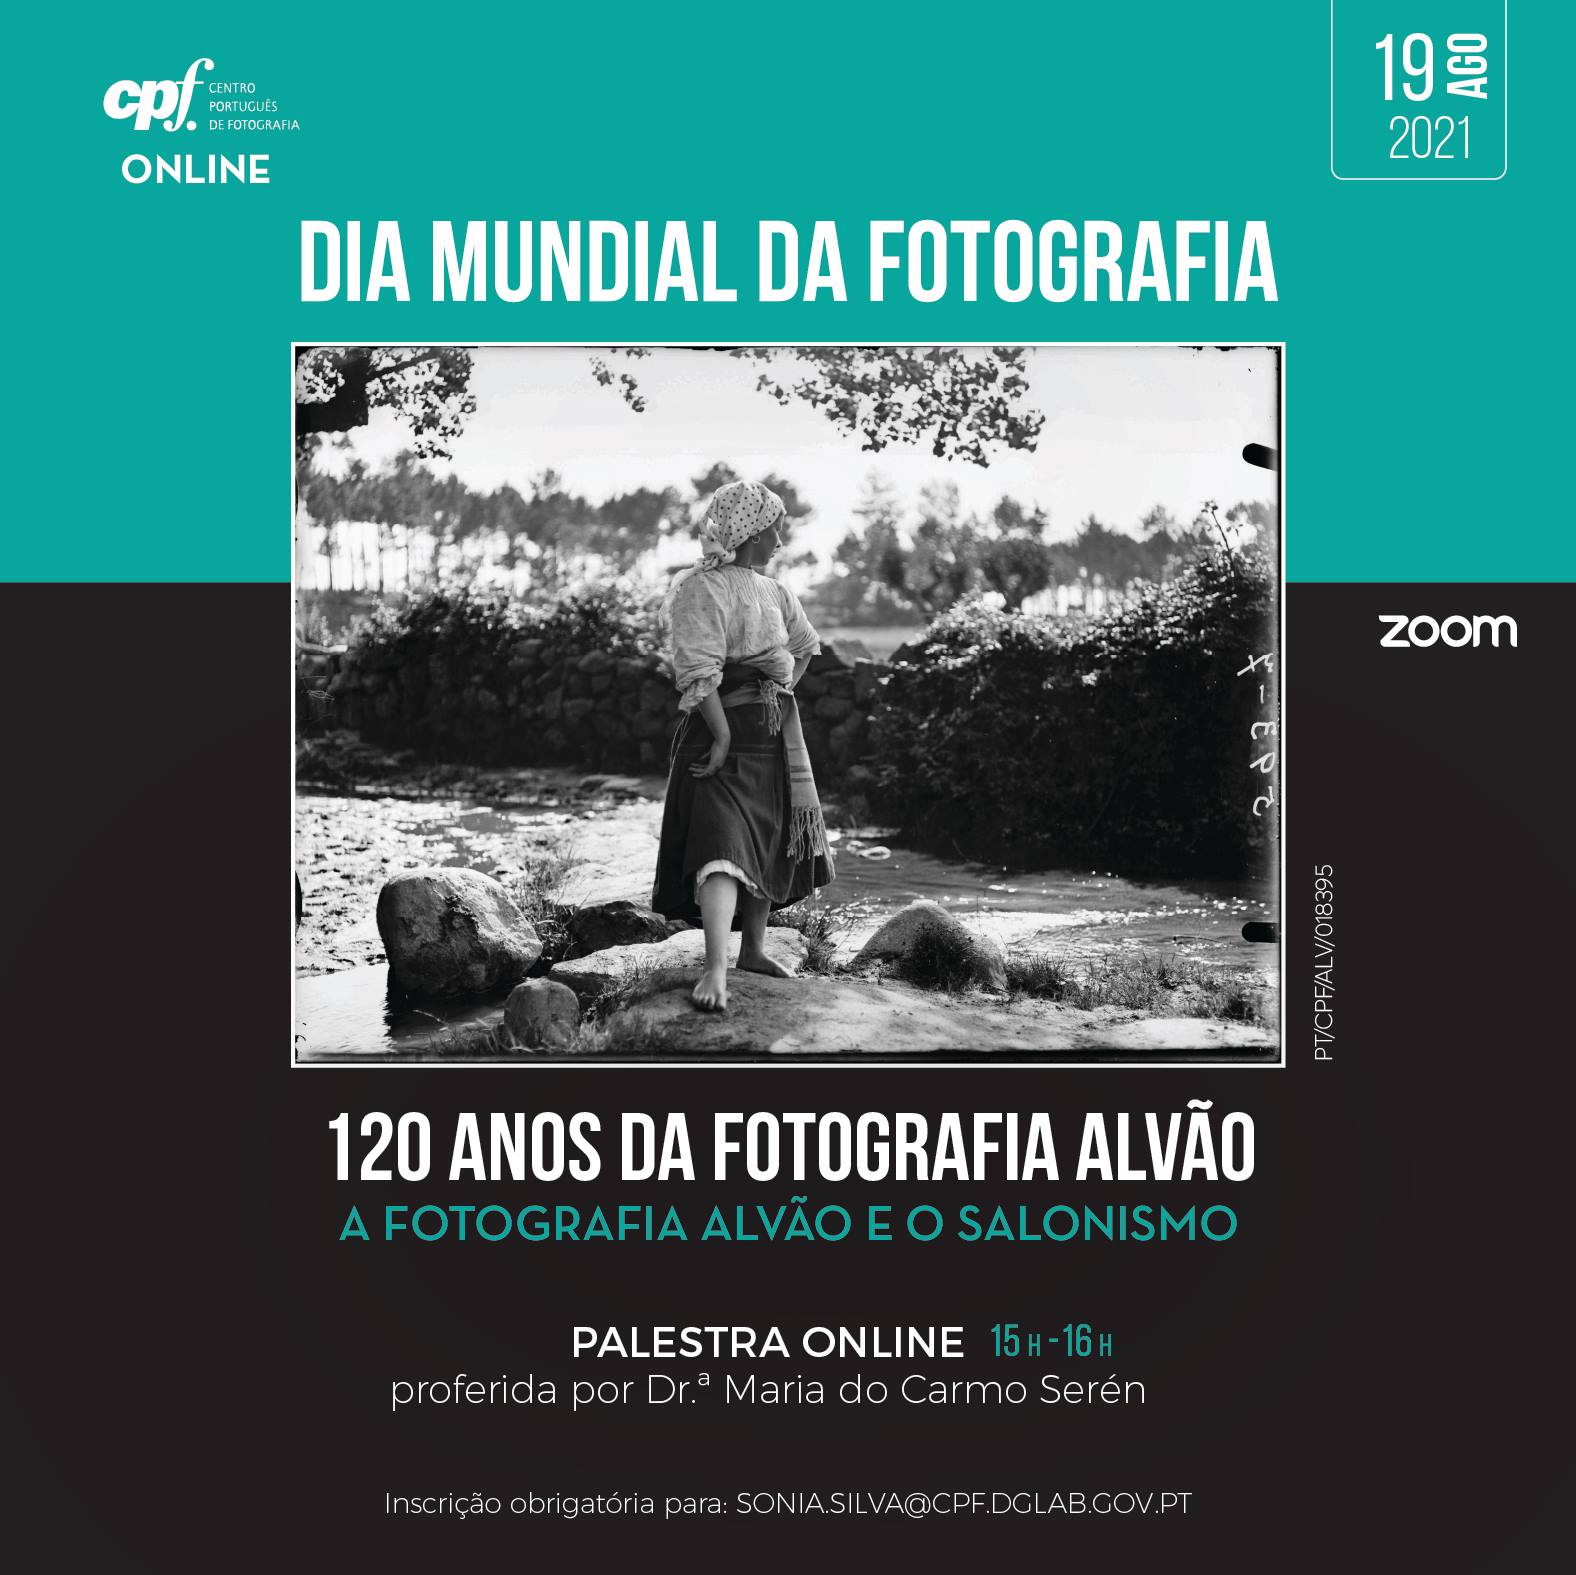 Dia Mundial da Fotografia 2021: A Fotografia Alvão e o Salonismo (palestra online)